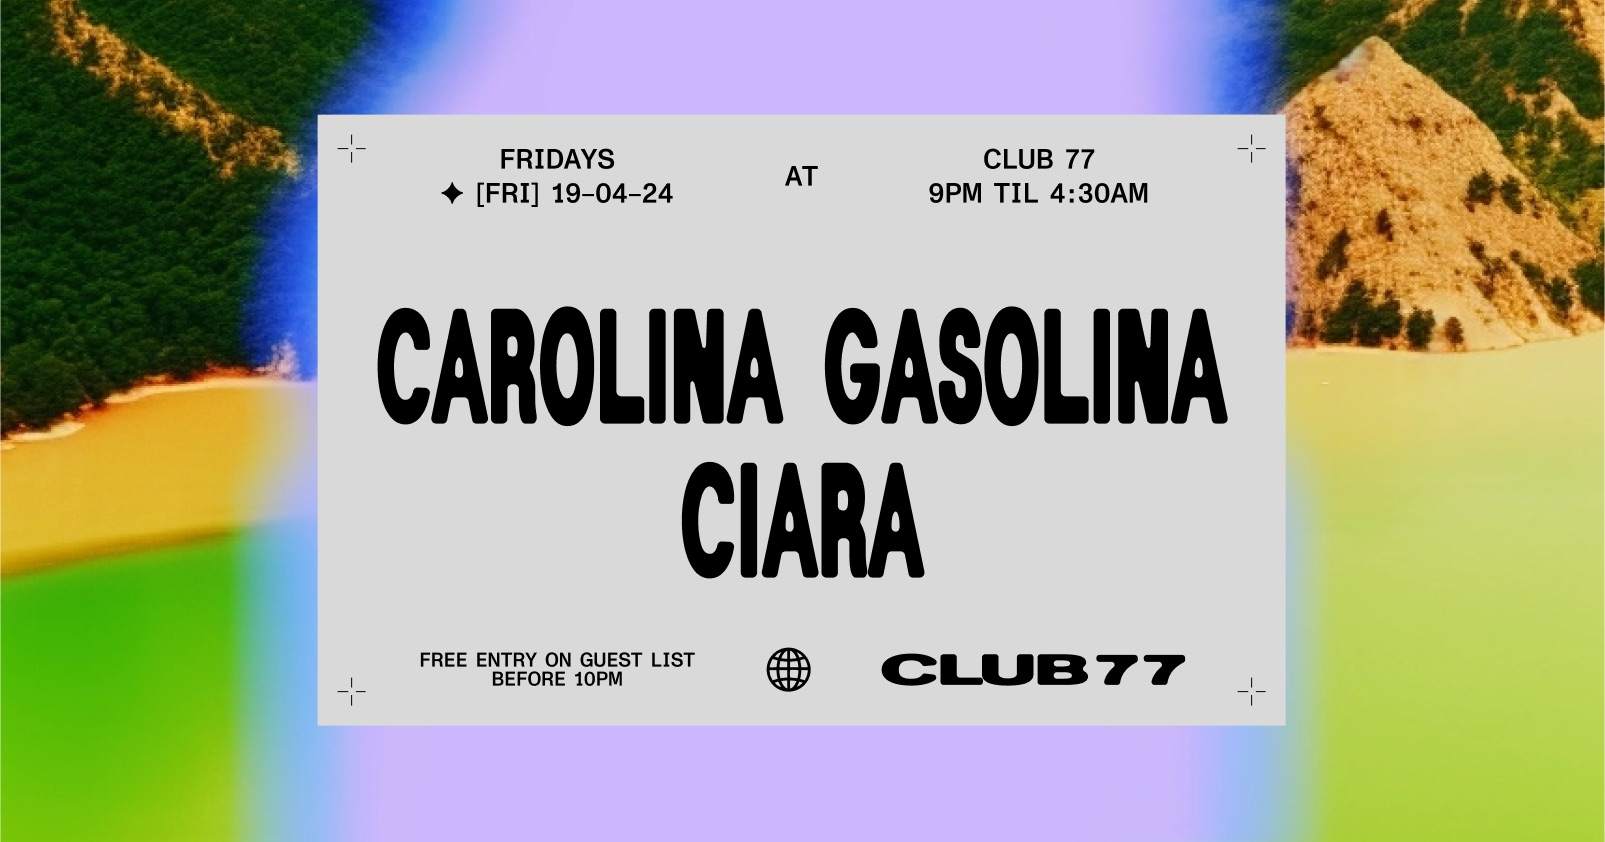 Fridays at 77: Carolina Gasolina, Ciara - フライヤー表